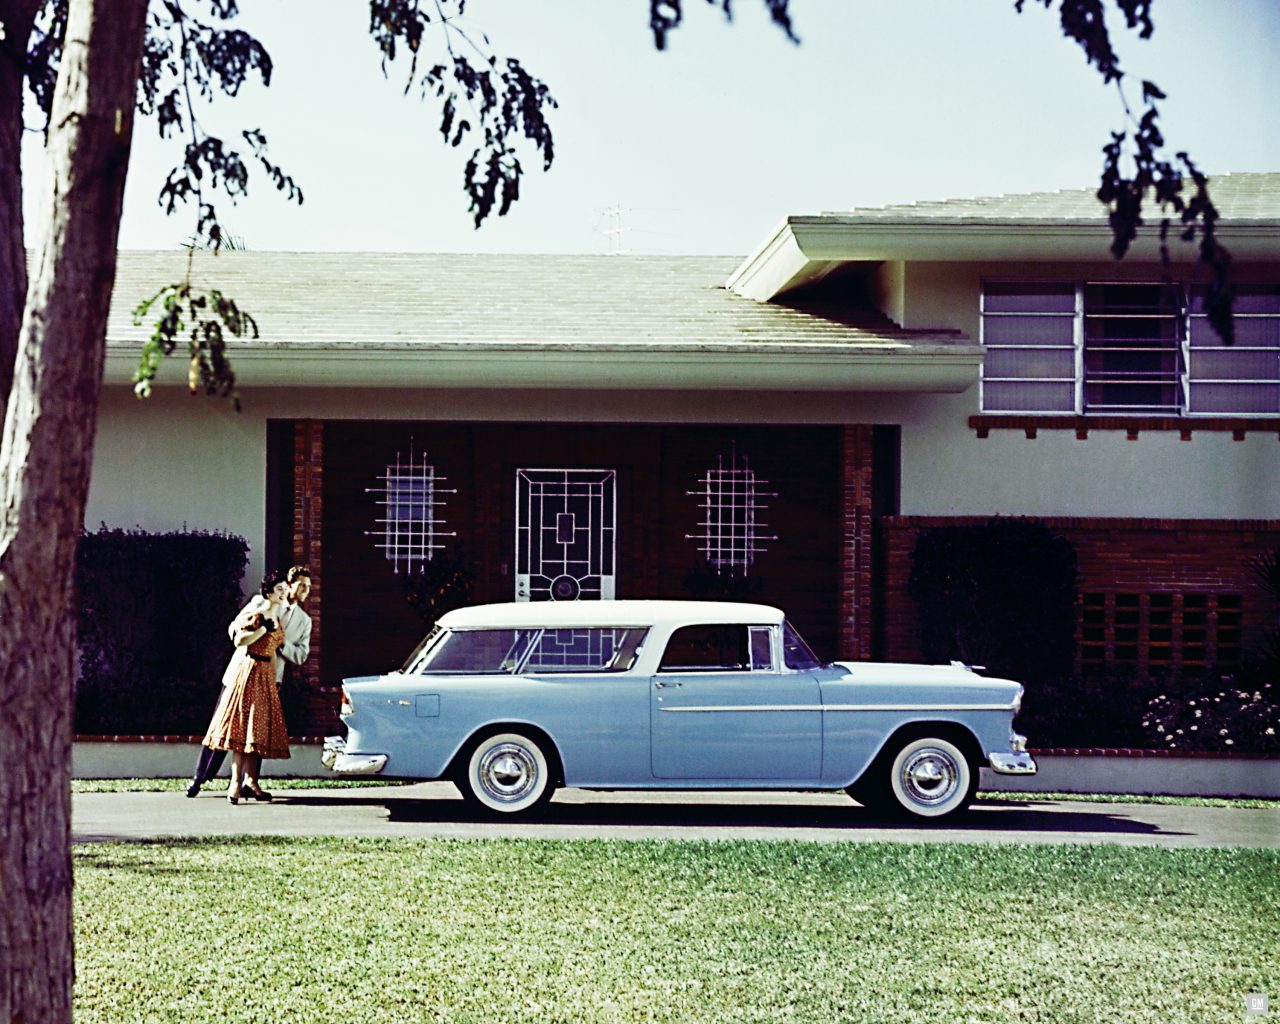 1955 Chevrolet Nomad station wagon